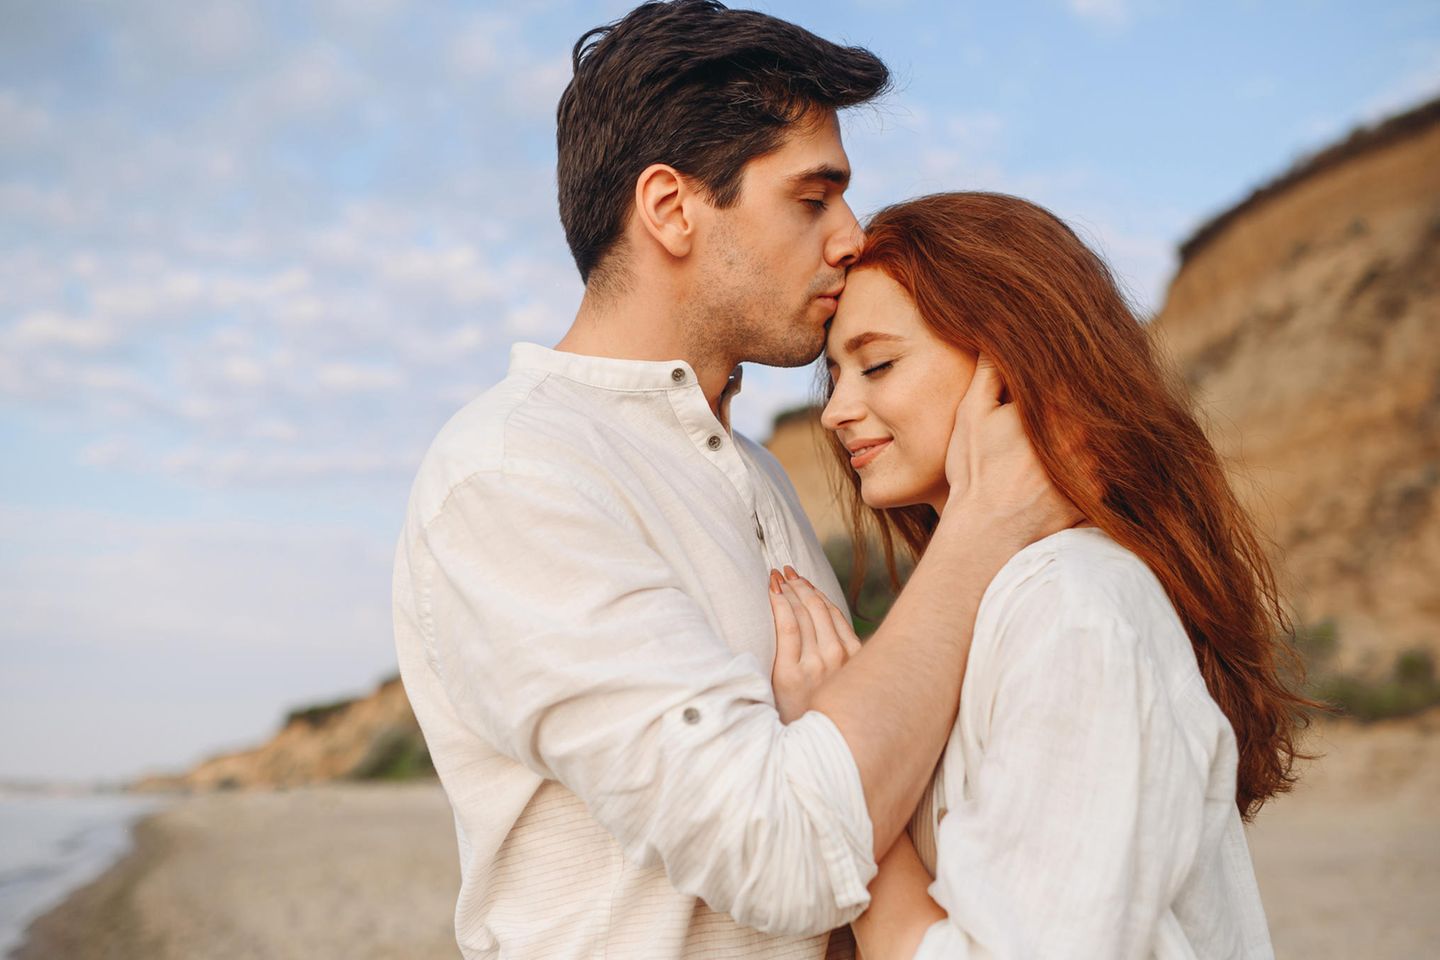 Relación simbiótica: un hombre le da a una mujer un beso amoroso en la frente